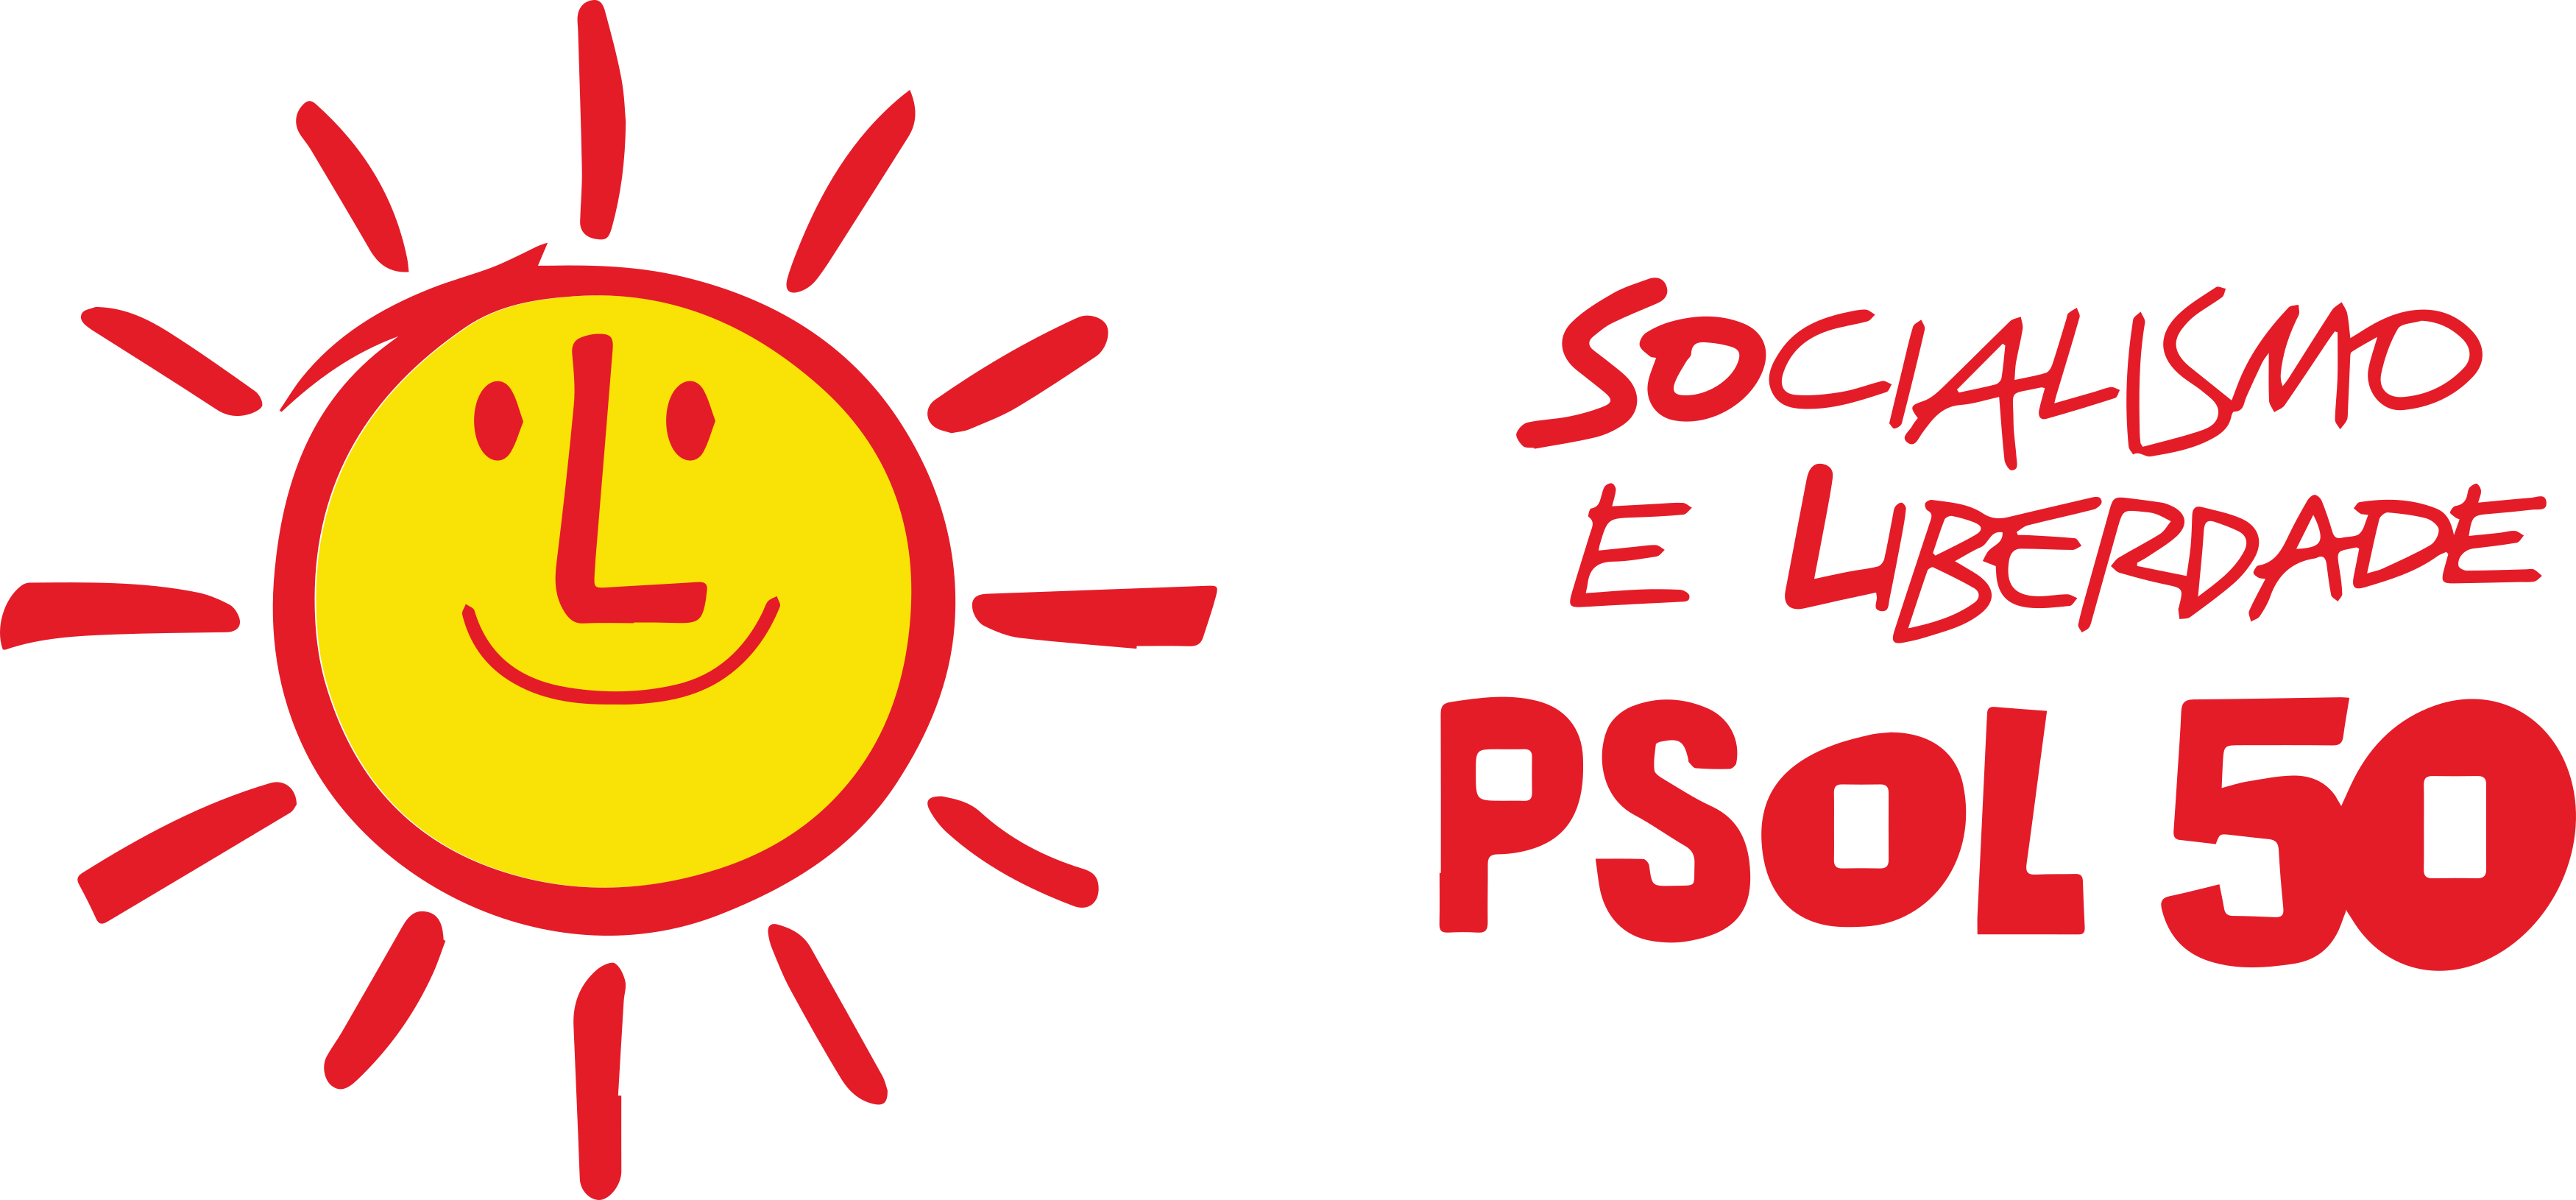 PSOL logo.png